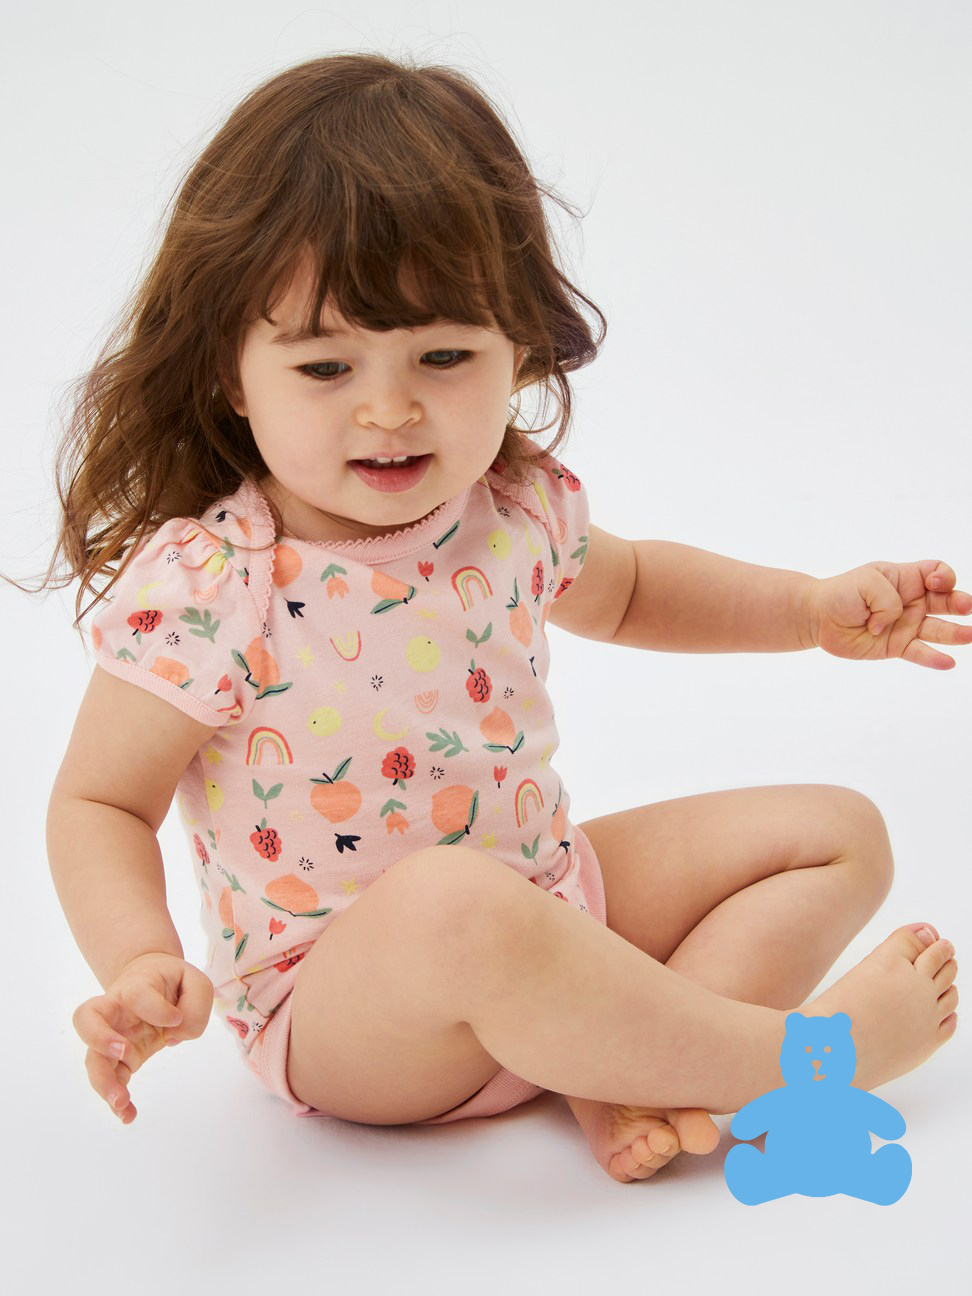 嬰兒|純棉印花短袖包屁衣 布萊納系列-粉色